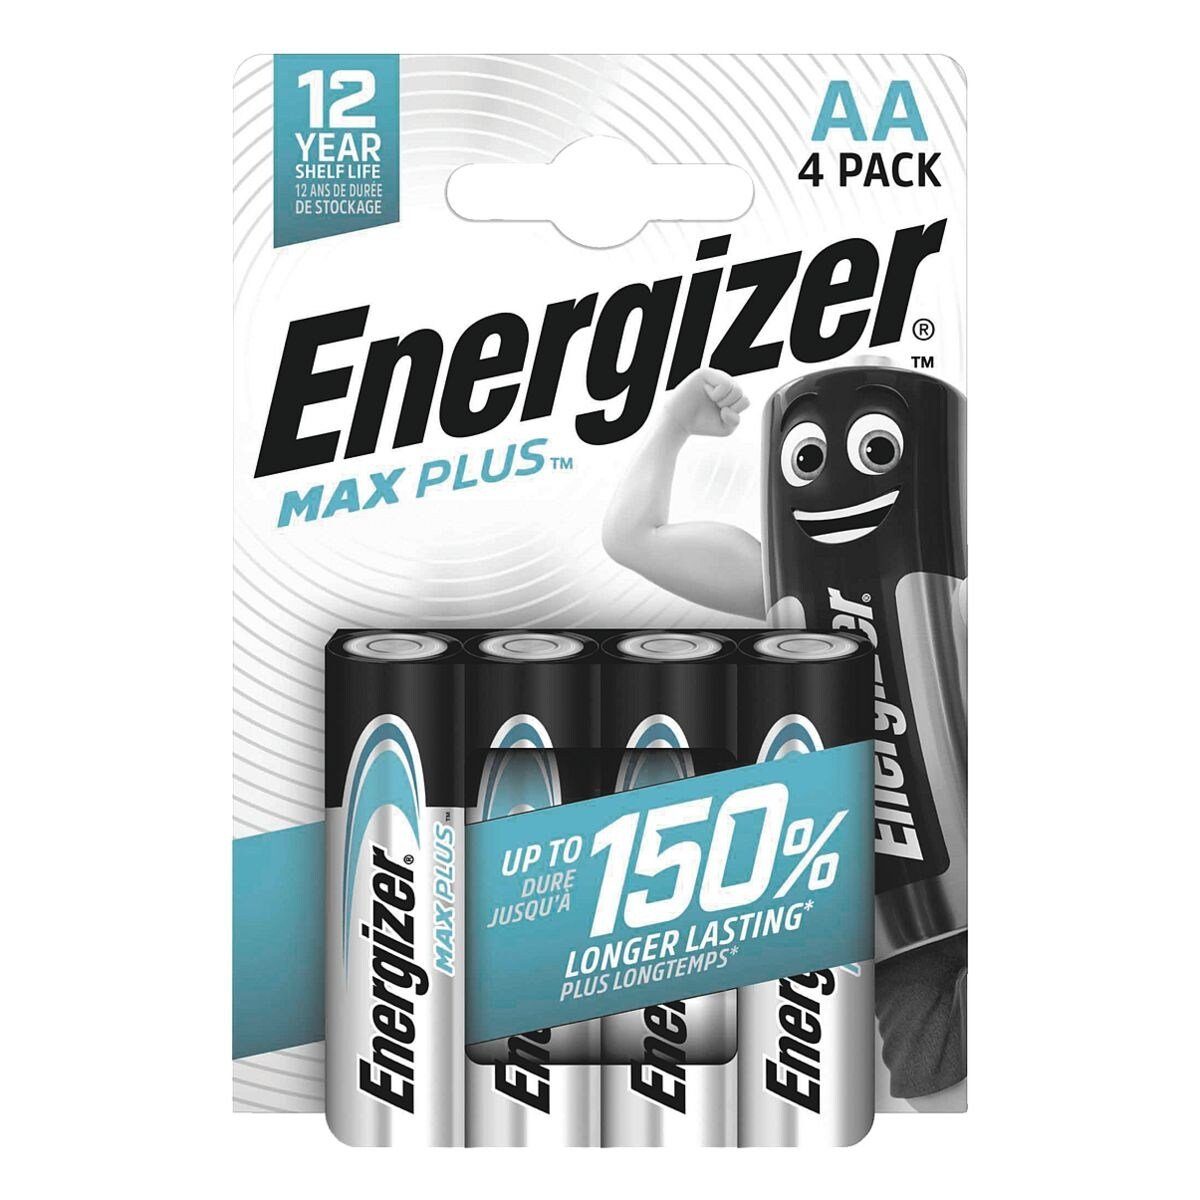 Energizer Max Plus Batterie, (4 St), Mignon / AA, 1,5 V, Zink-Mangan, mit Auslaufschutz (2 Jahre)